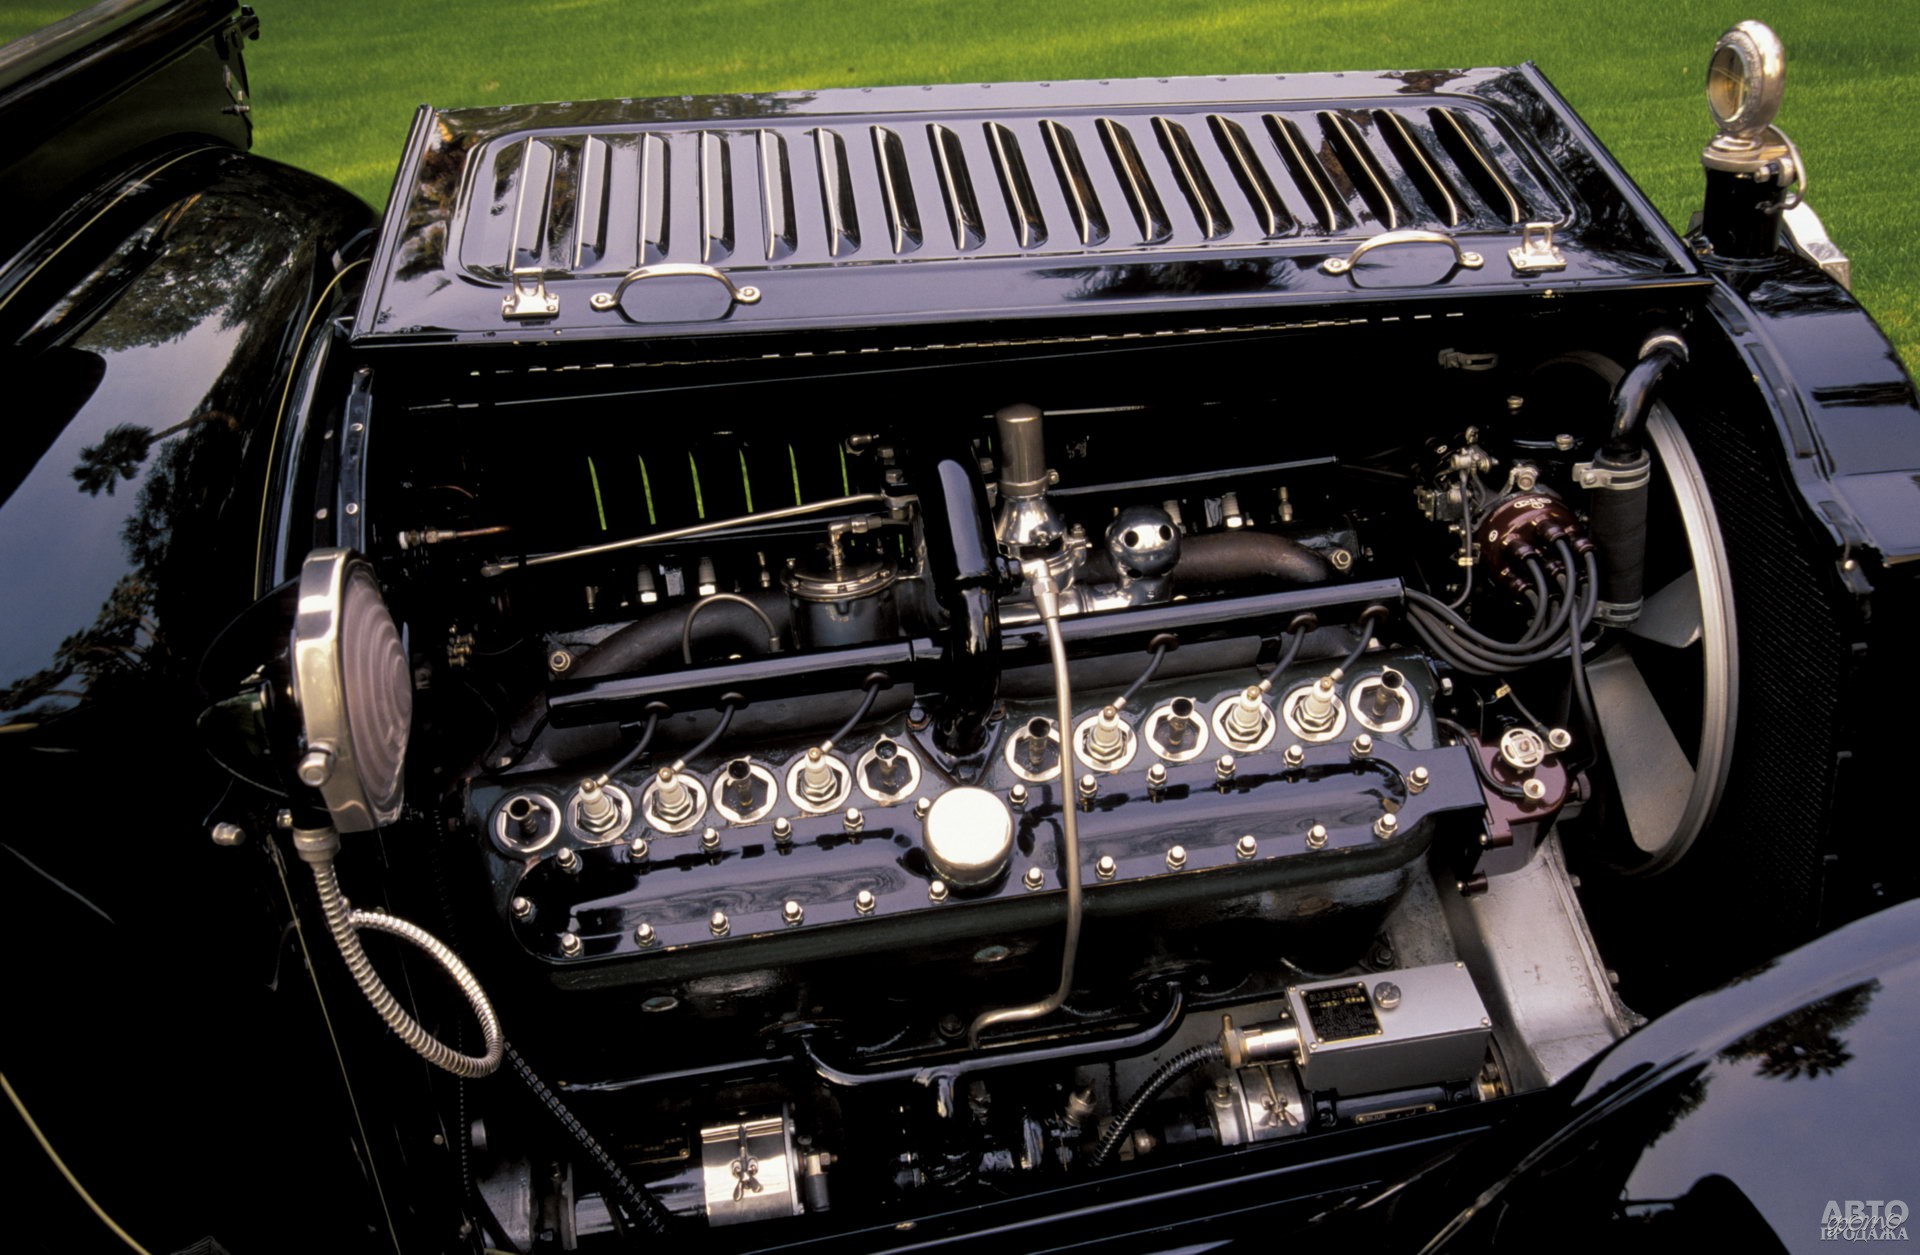 Двигатель объемом 7,0 л развивал 88 л. с. и отличался необычайной плавностью работы